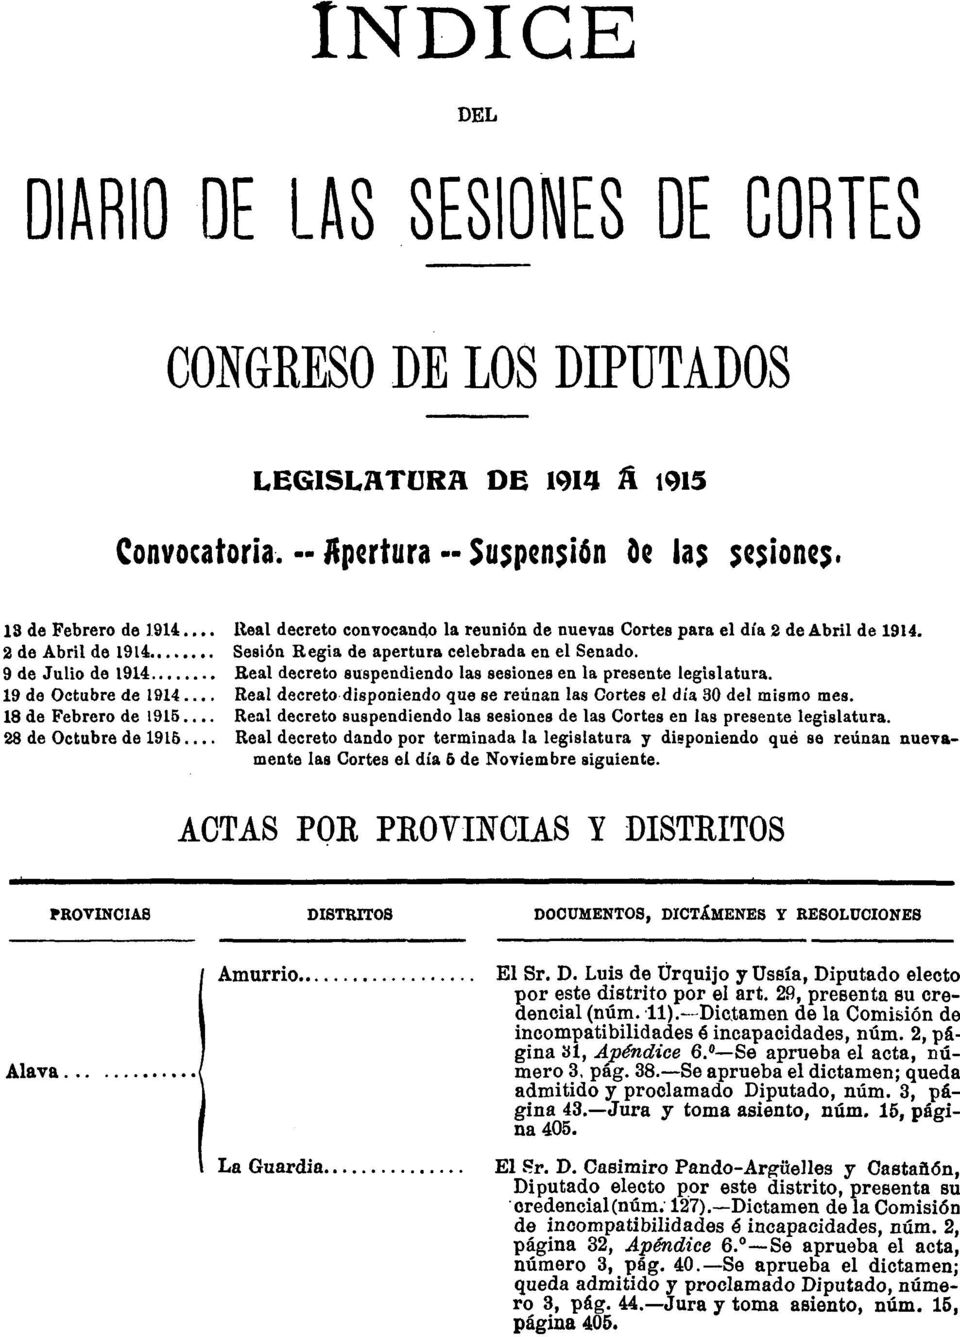 9 de Julio de 1914 Real decreto suspendiendo las sesiones en la presente legislatura. 19 de Octubre de 1914 Real decreto disponiendo que se reúnan las Cortes el día 30 del mismo mes.